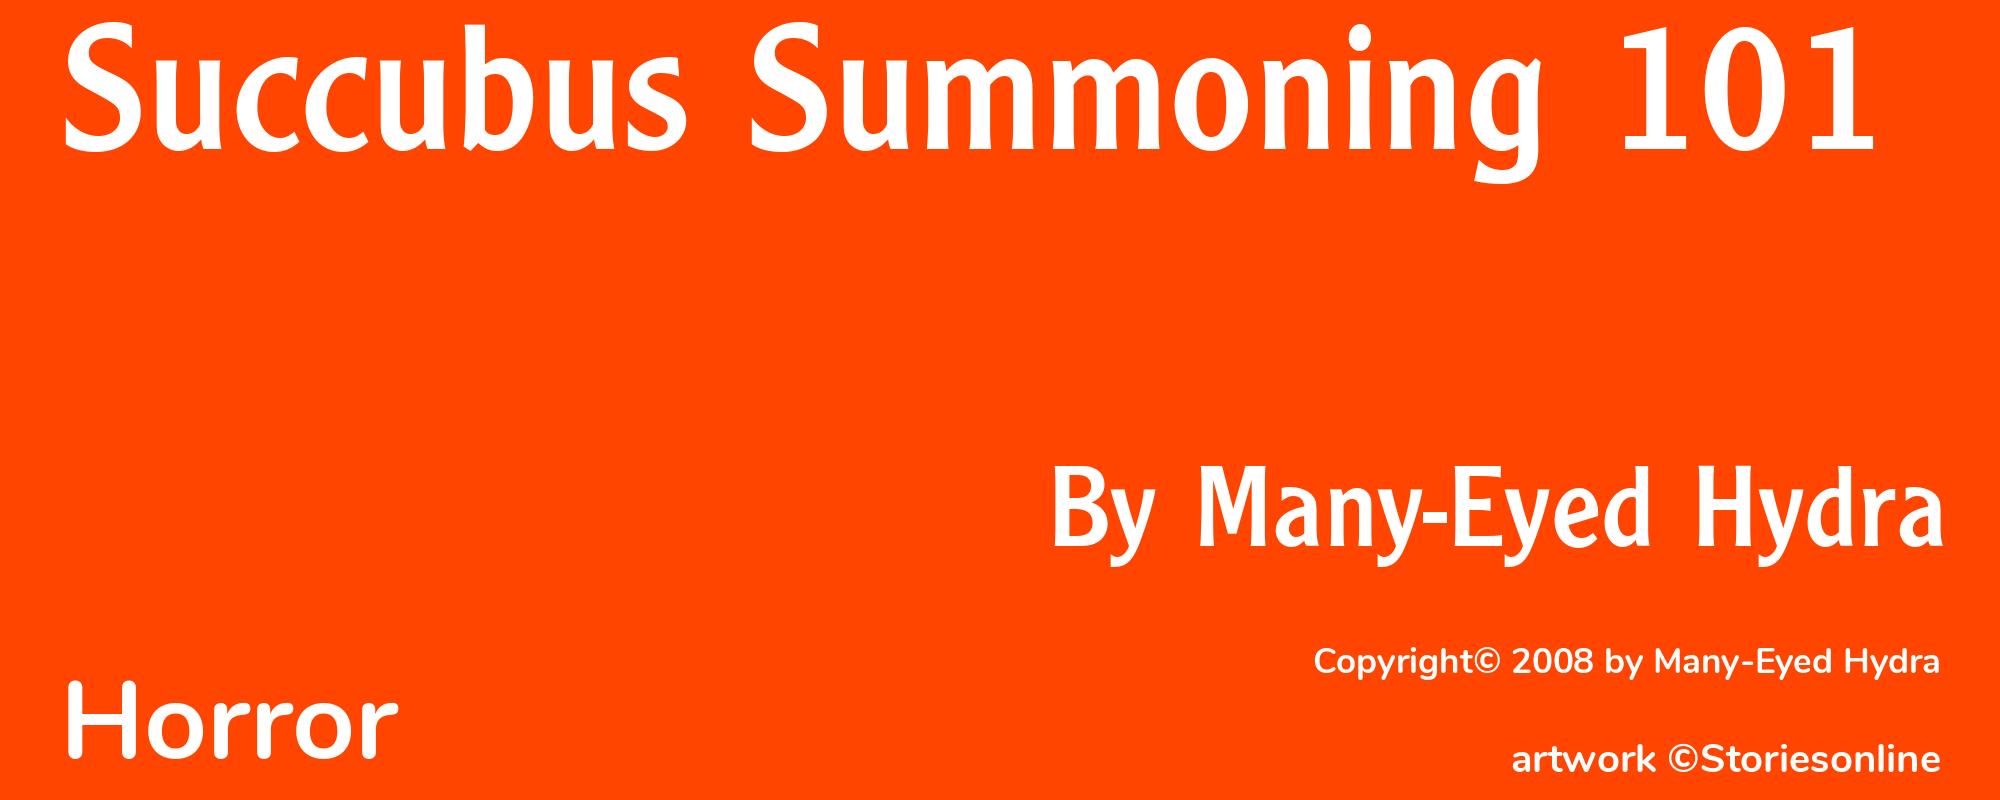 Succubus Summoning 101 - Cover